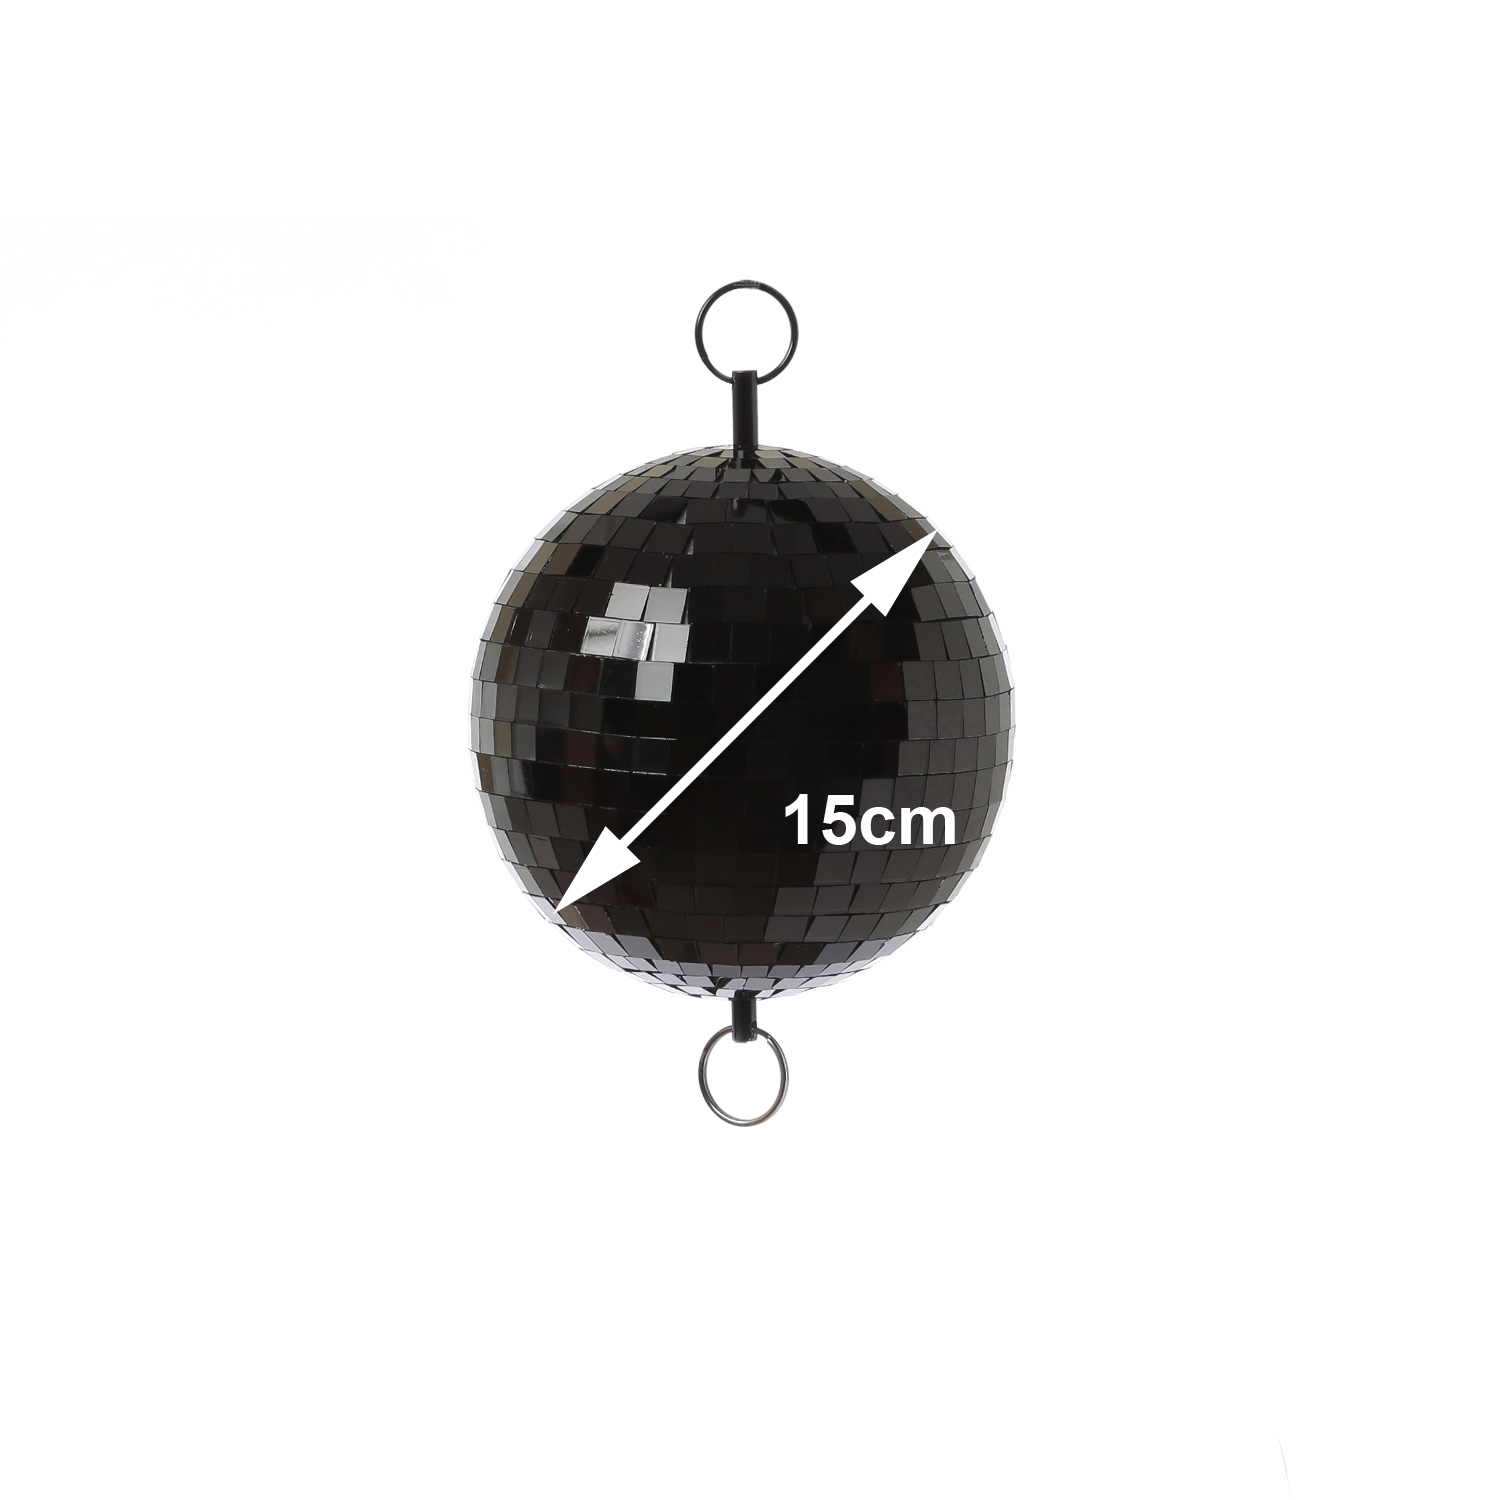 Spiegelkugel 40cm - schwarz - Discokugel Echtglas - 10x10mm Spiegel - PROMO - Metallöse oben + unten